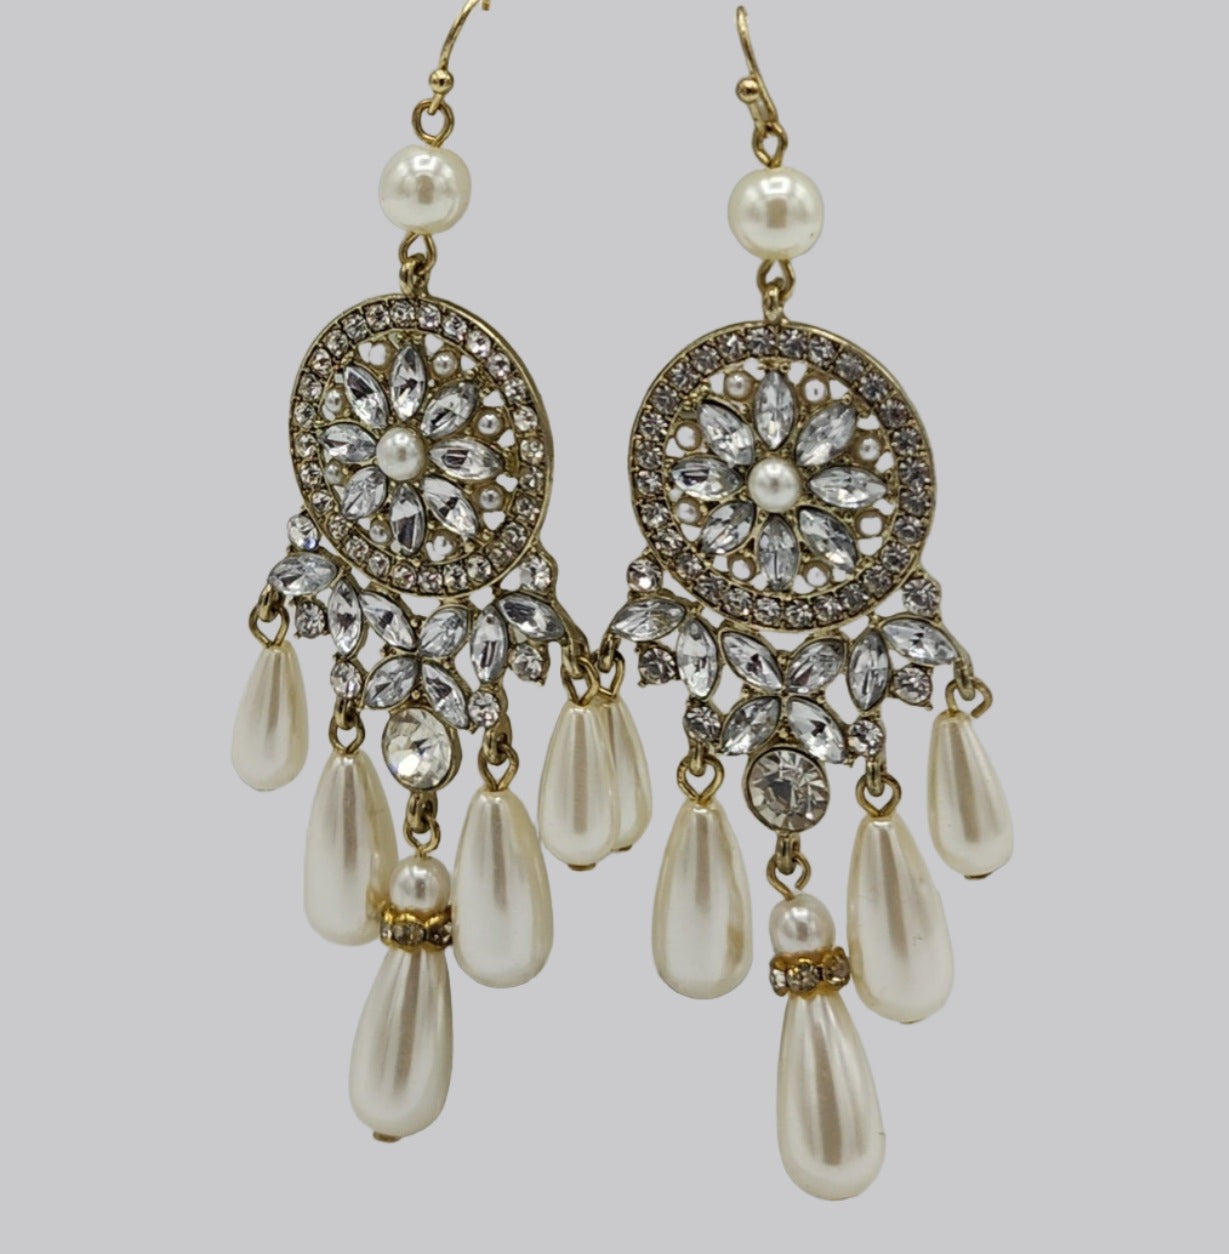 Gold, Rhinestone and Pearl earrings 